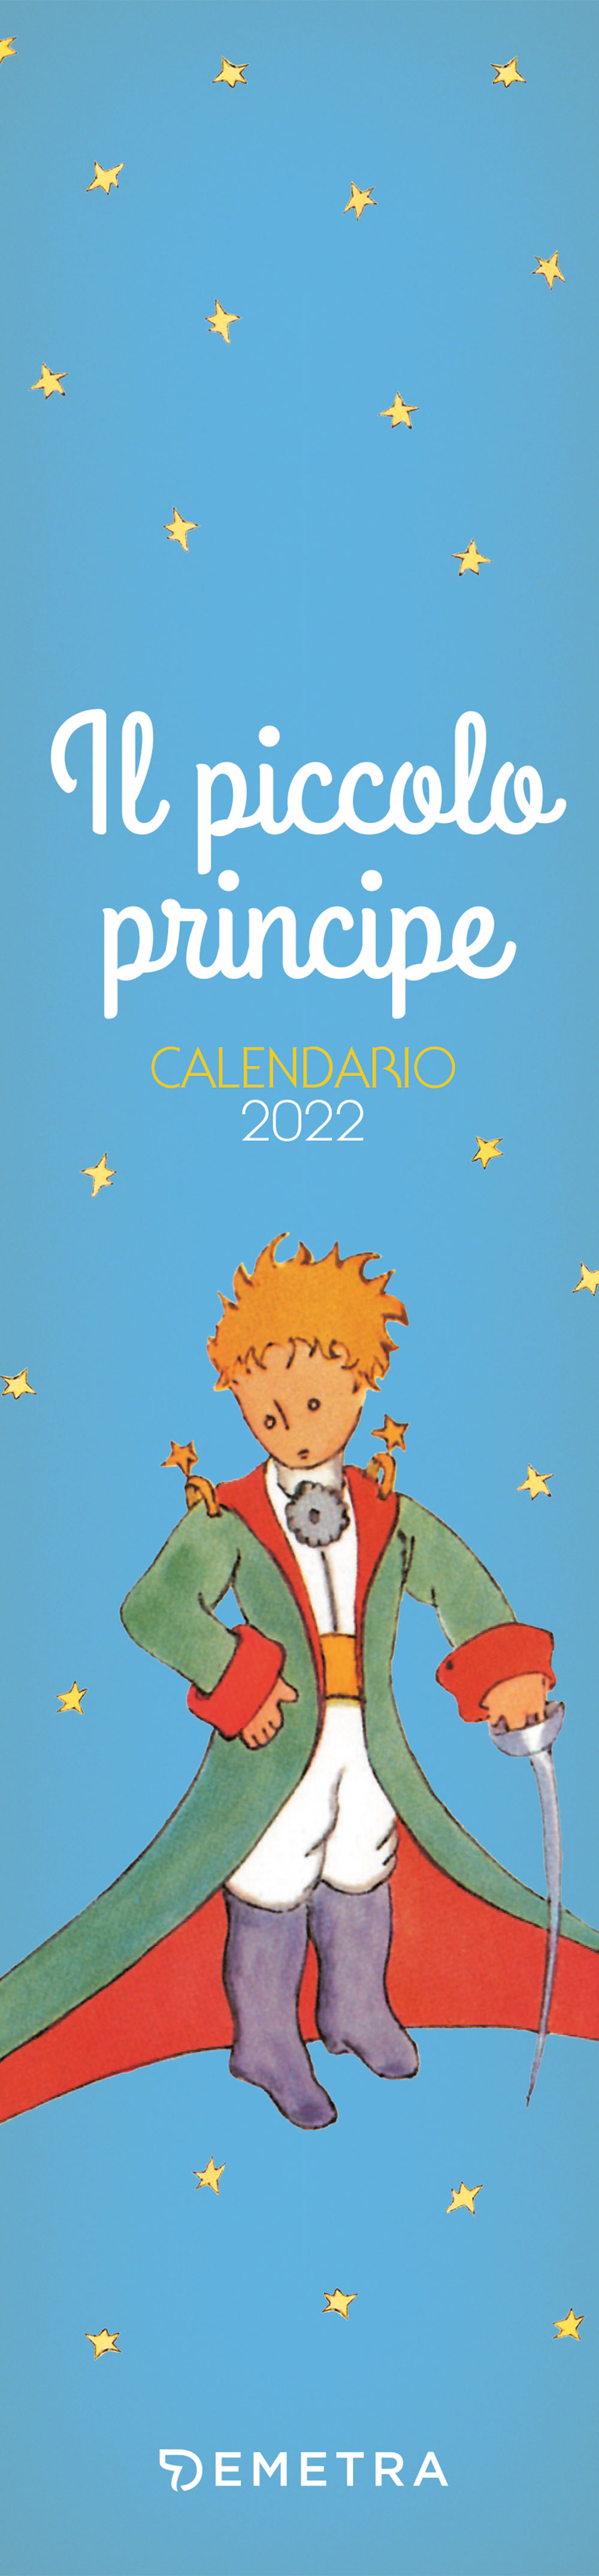 Calendario Piccolo Principe 2022